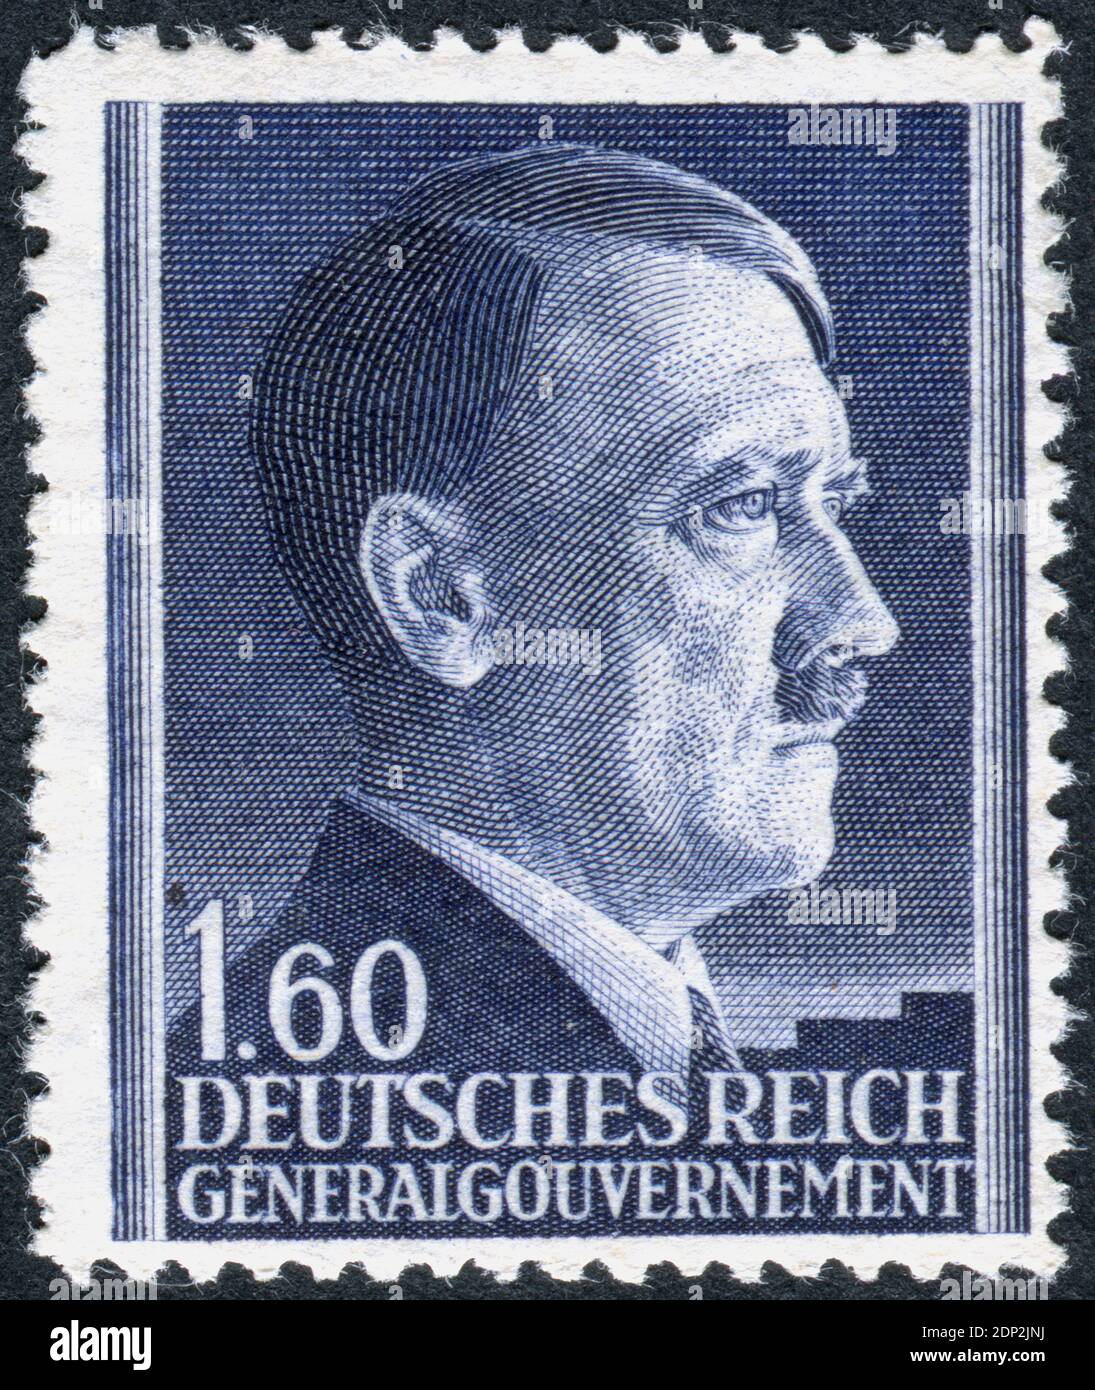 ALLEMAGNE - VERS 1942: Timbre-poste imprimé en Allemagne (Gouvernement général, Pologne), a montré le portrait d'Adolf Hitler - un homme politique allemand, chef (Fuehrer) de l'Allemagne et du Parti nazi, vers 1942 Banque D'Images